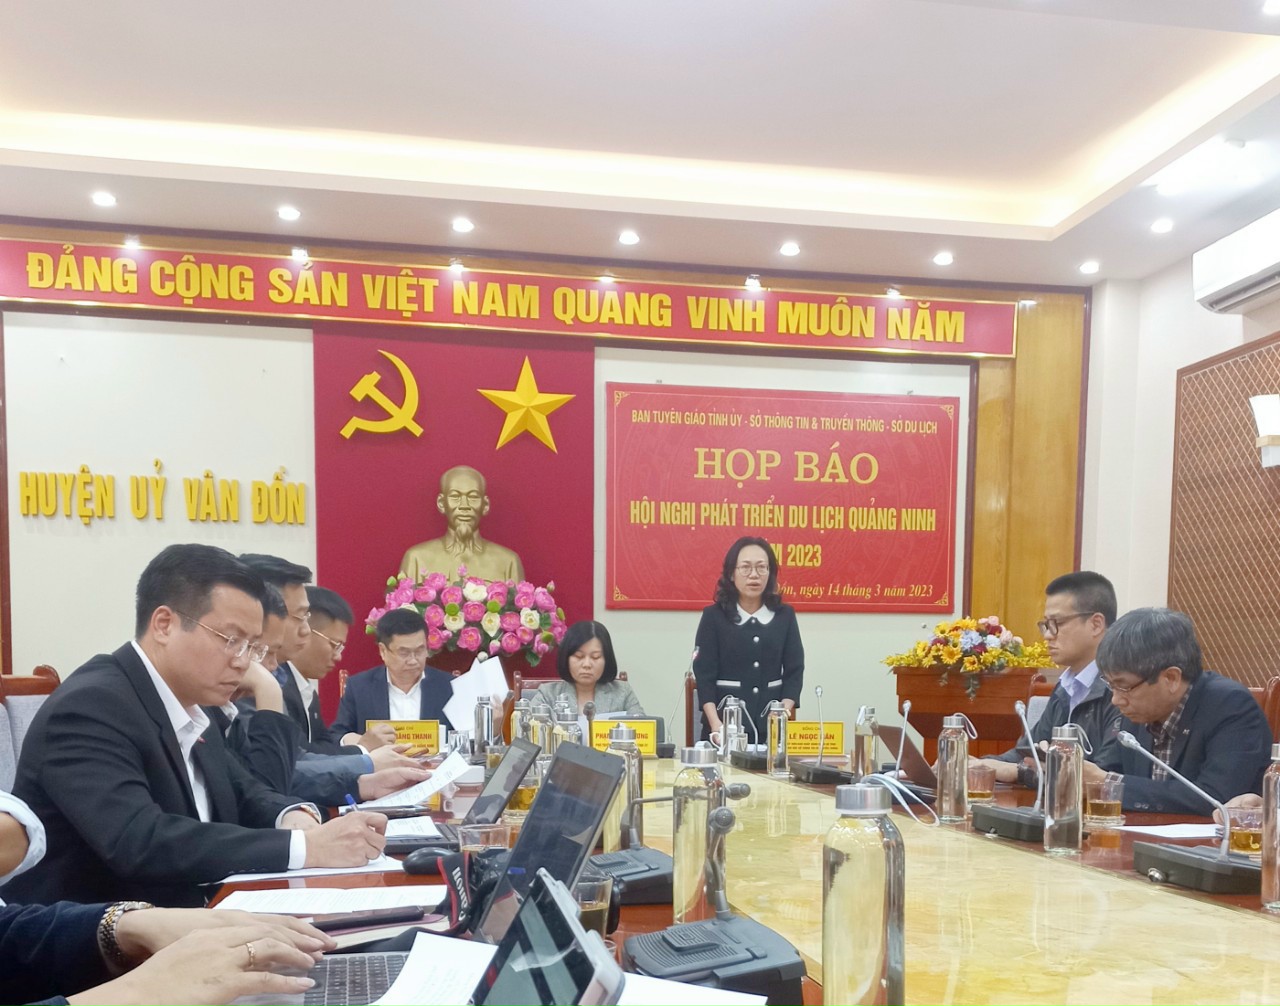 Tỉnh Quảng Ninh họp báo thông tin về việc tổ chức Hội nghị phát triển du lịch Quảng Ninh năm 2023